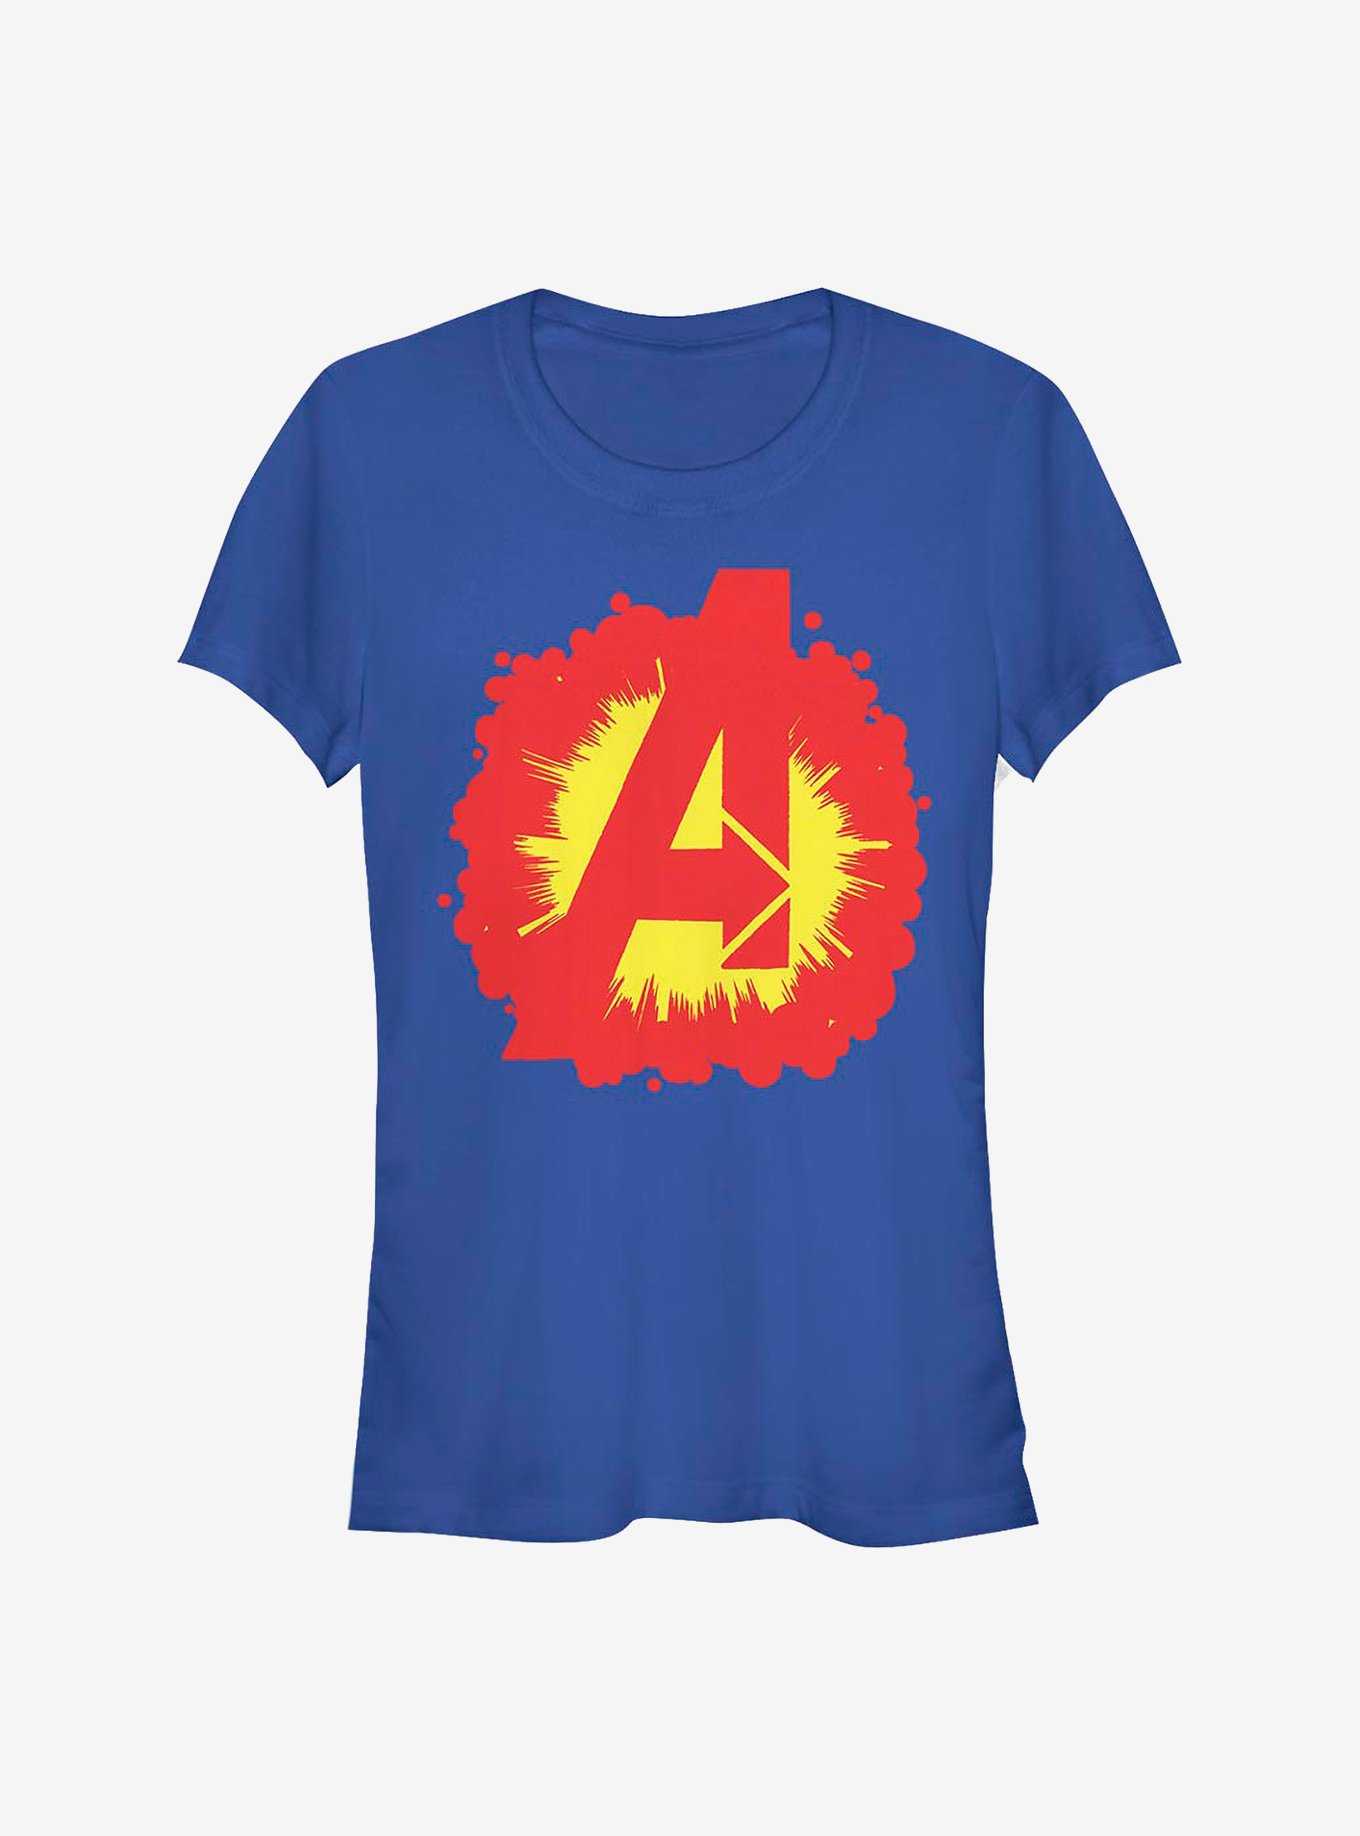 Marvel Avengers Avenger Explosion Girls T-Shirt, , hi-res